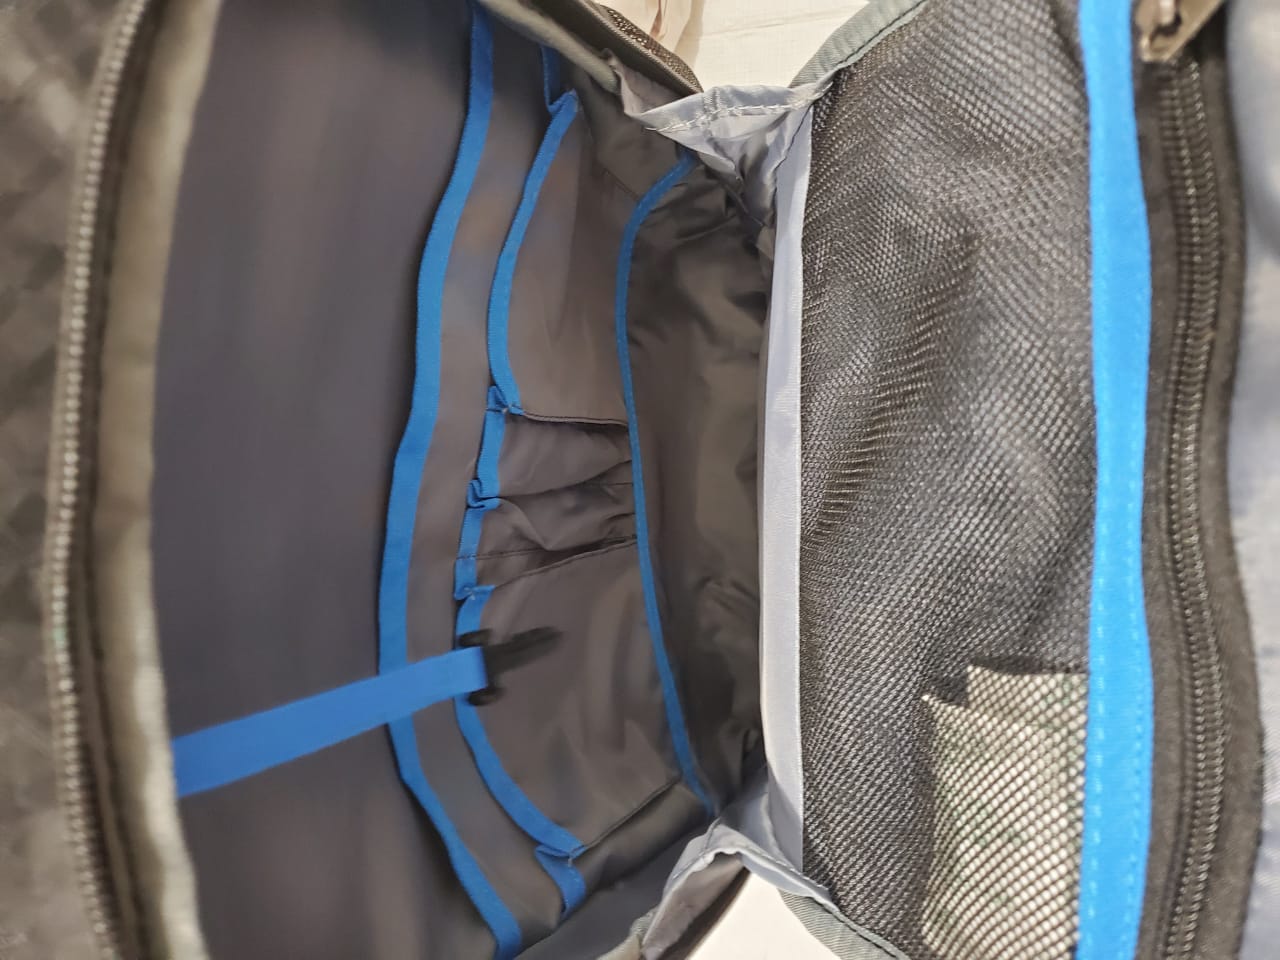 Mochila Samsonite Carrier GSD Backpack